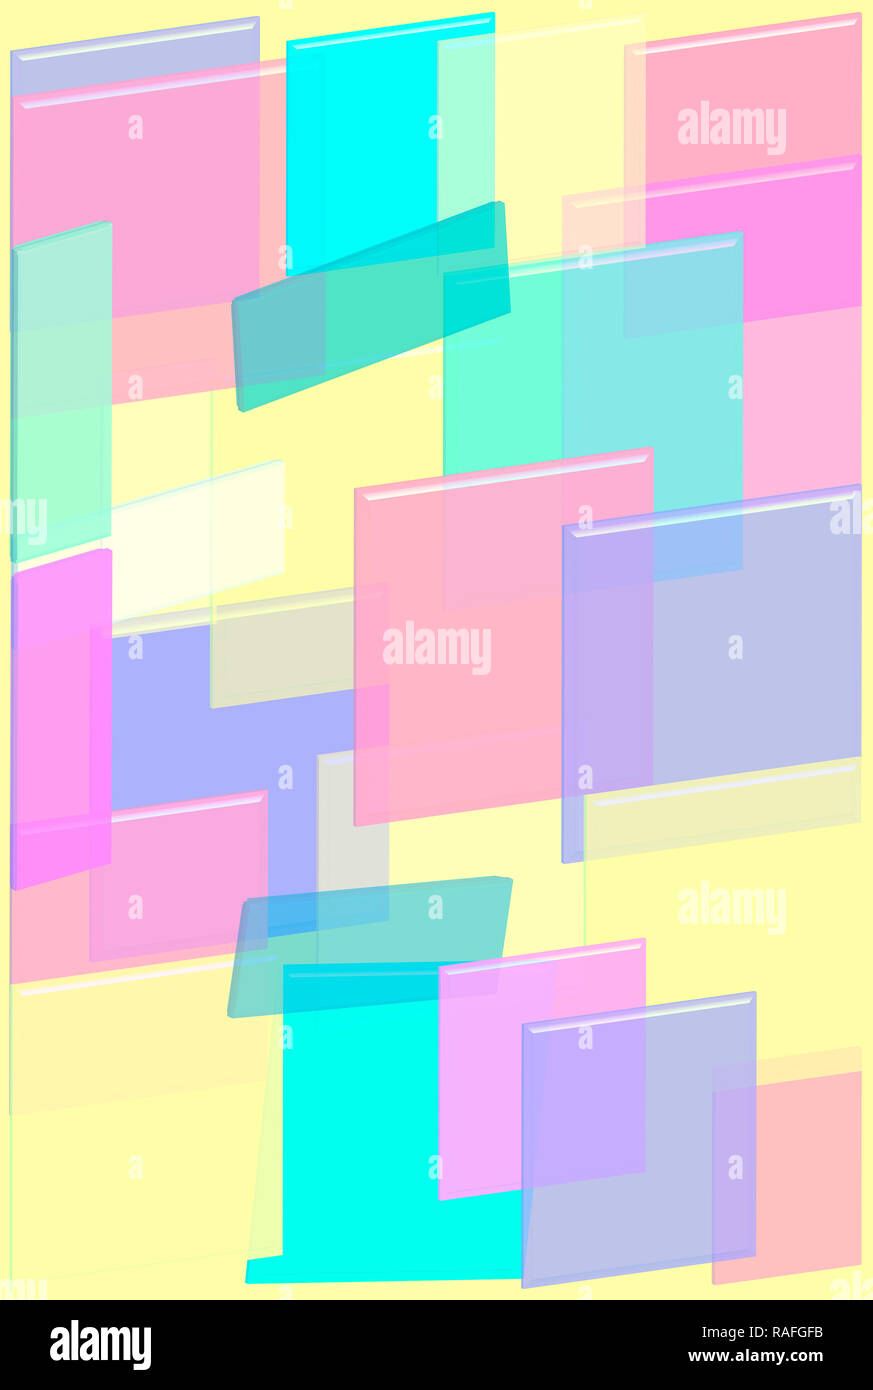 Illustrazione delle figure geometriche di rettangoli e quadrati in 3d in colori pastello Foto Stock